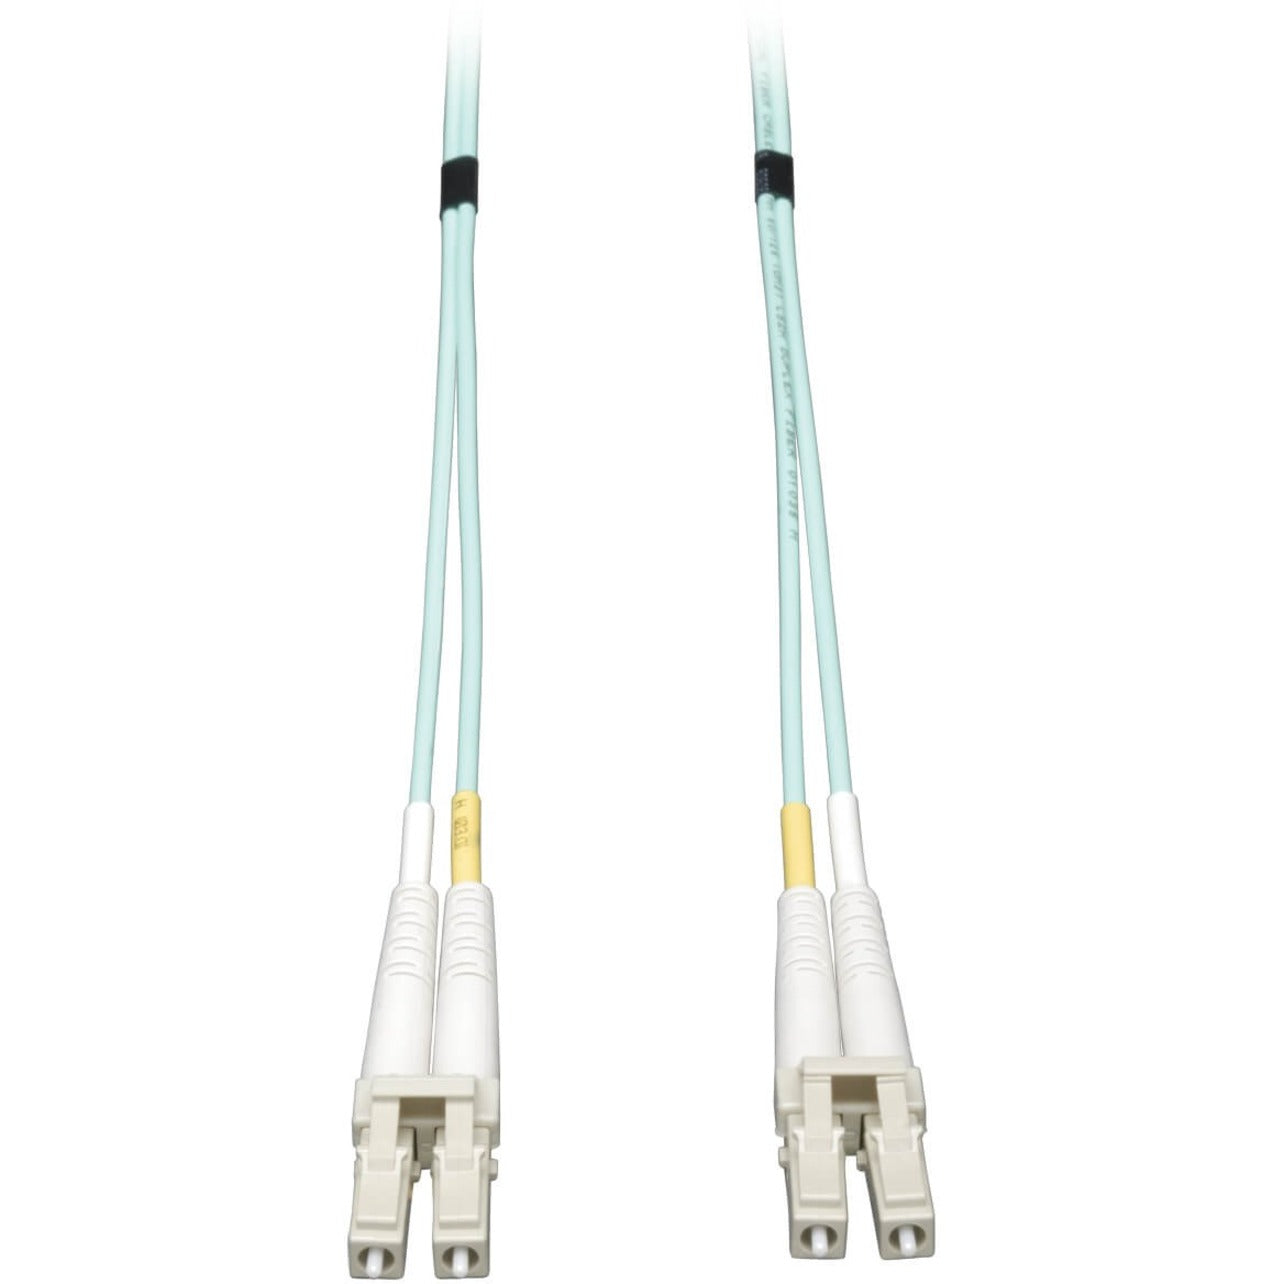 Tripp Lite N820-10M 10Gb Duplex MMF 50/125 LSZH Patch Cable Aqua 10M (33 ft.)